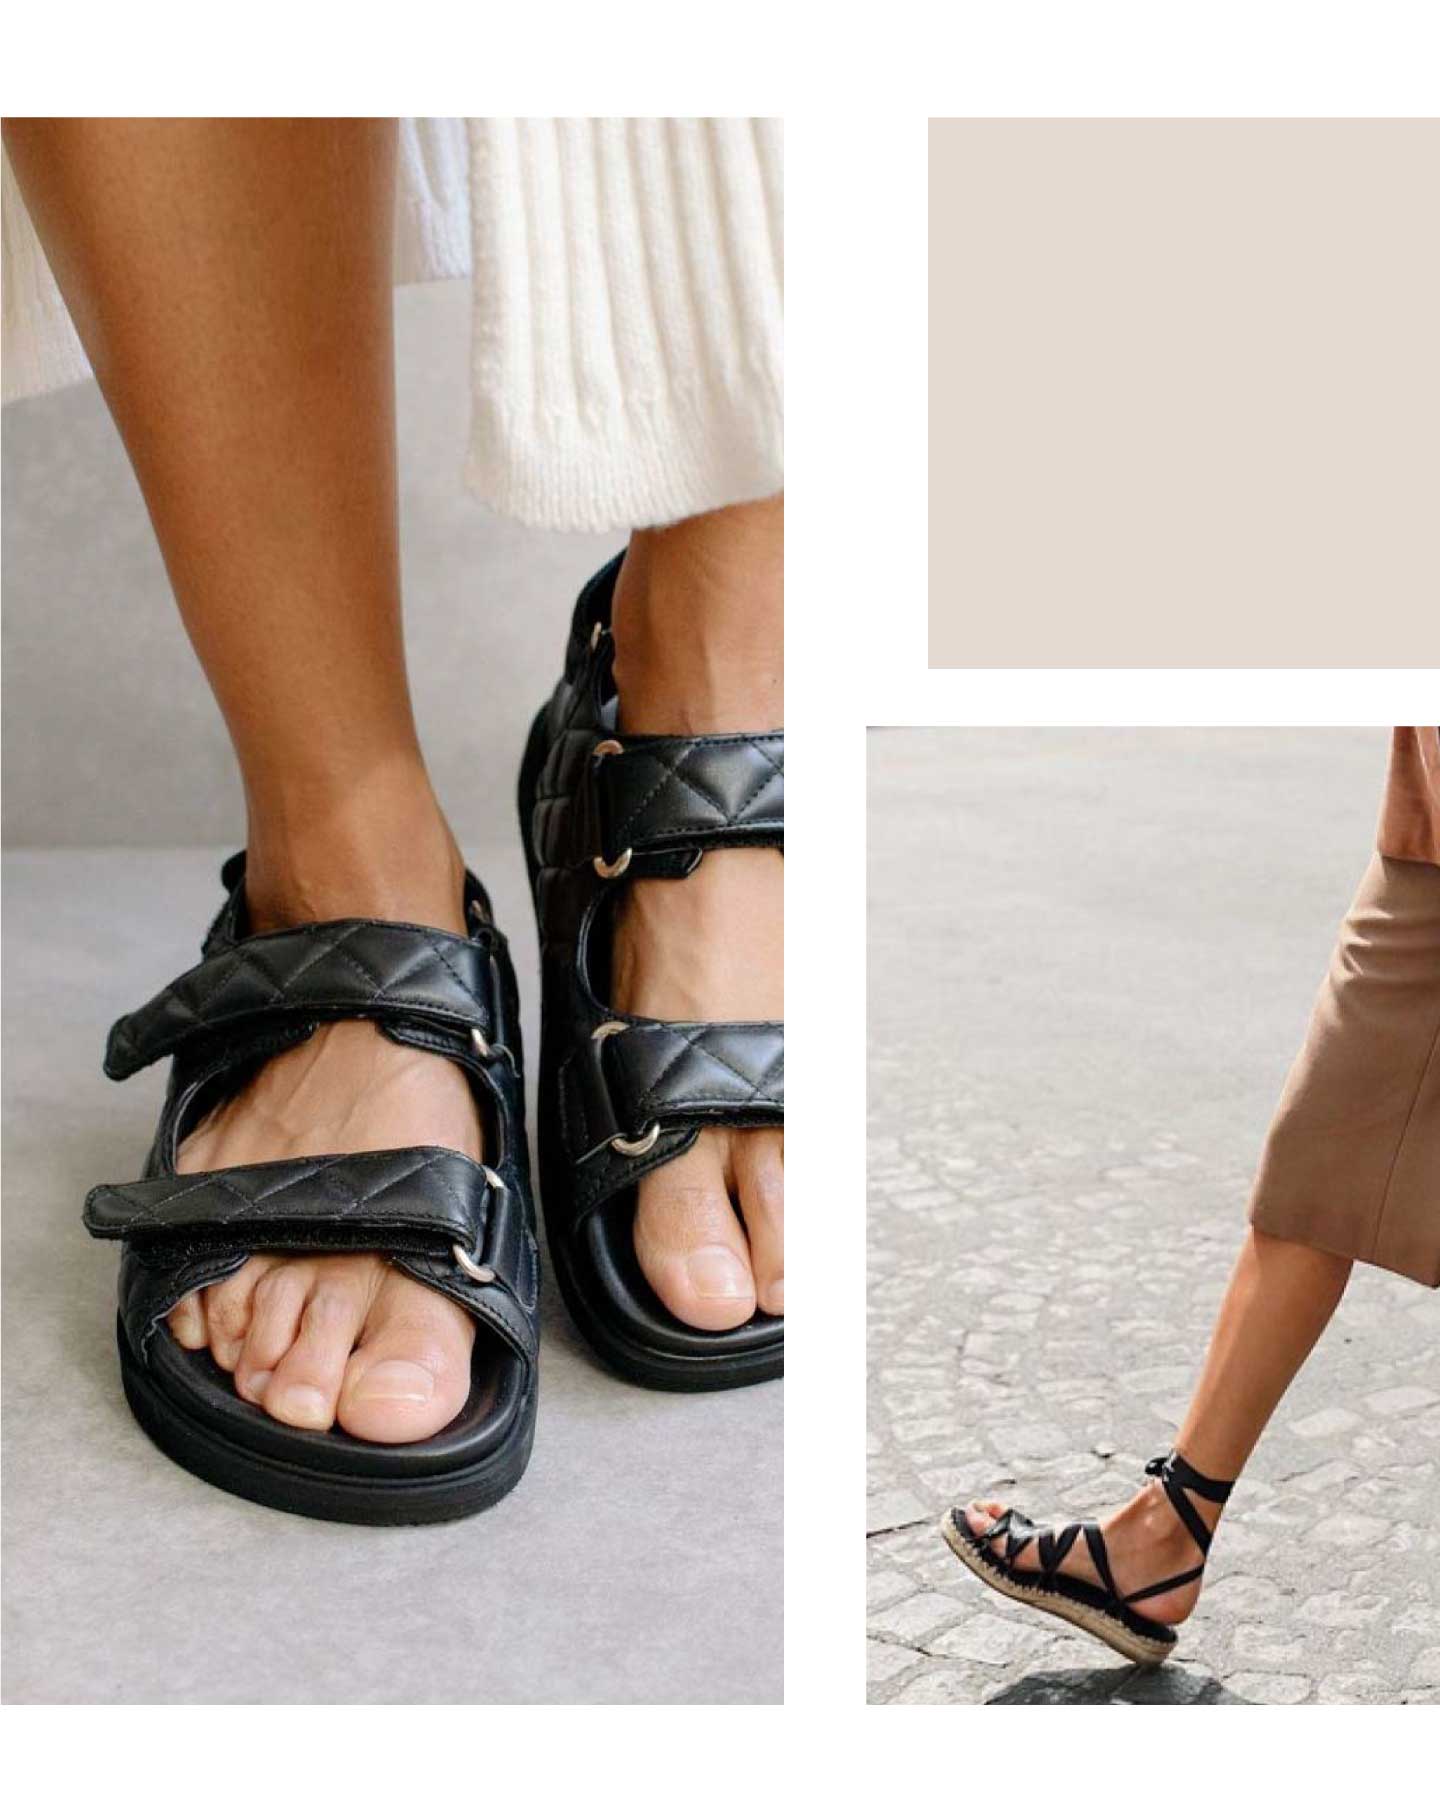 Cava La oficina Ordenanza del gobierno Encuentra las sandalias perfectas según tu tipo de pie - Lookiero Blog